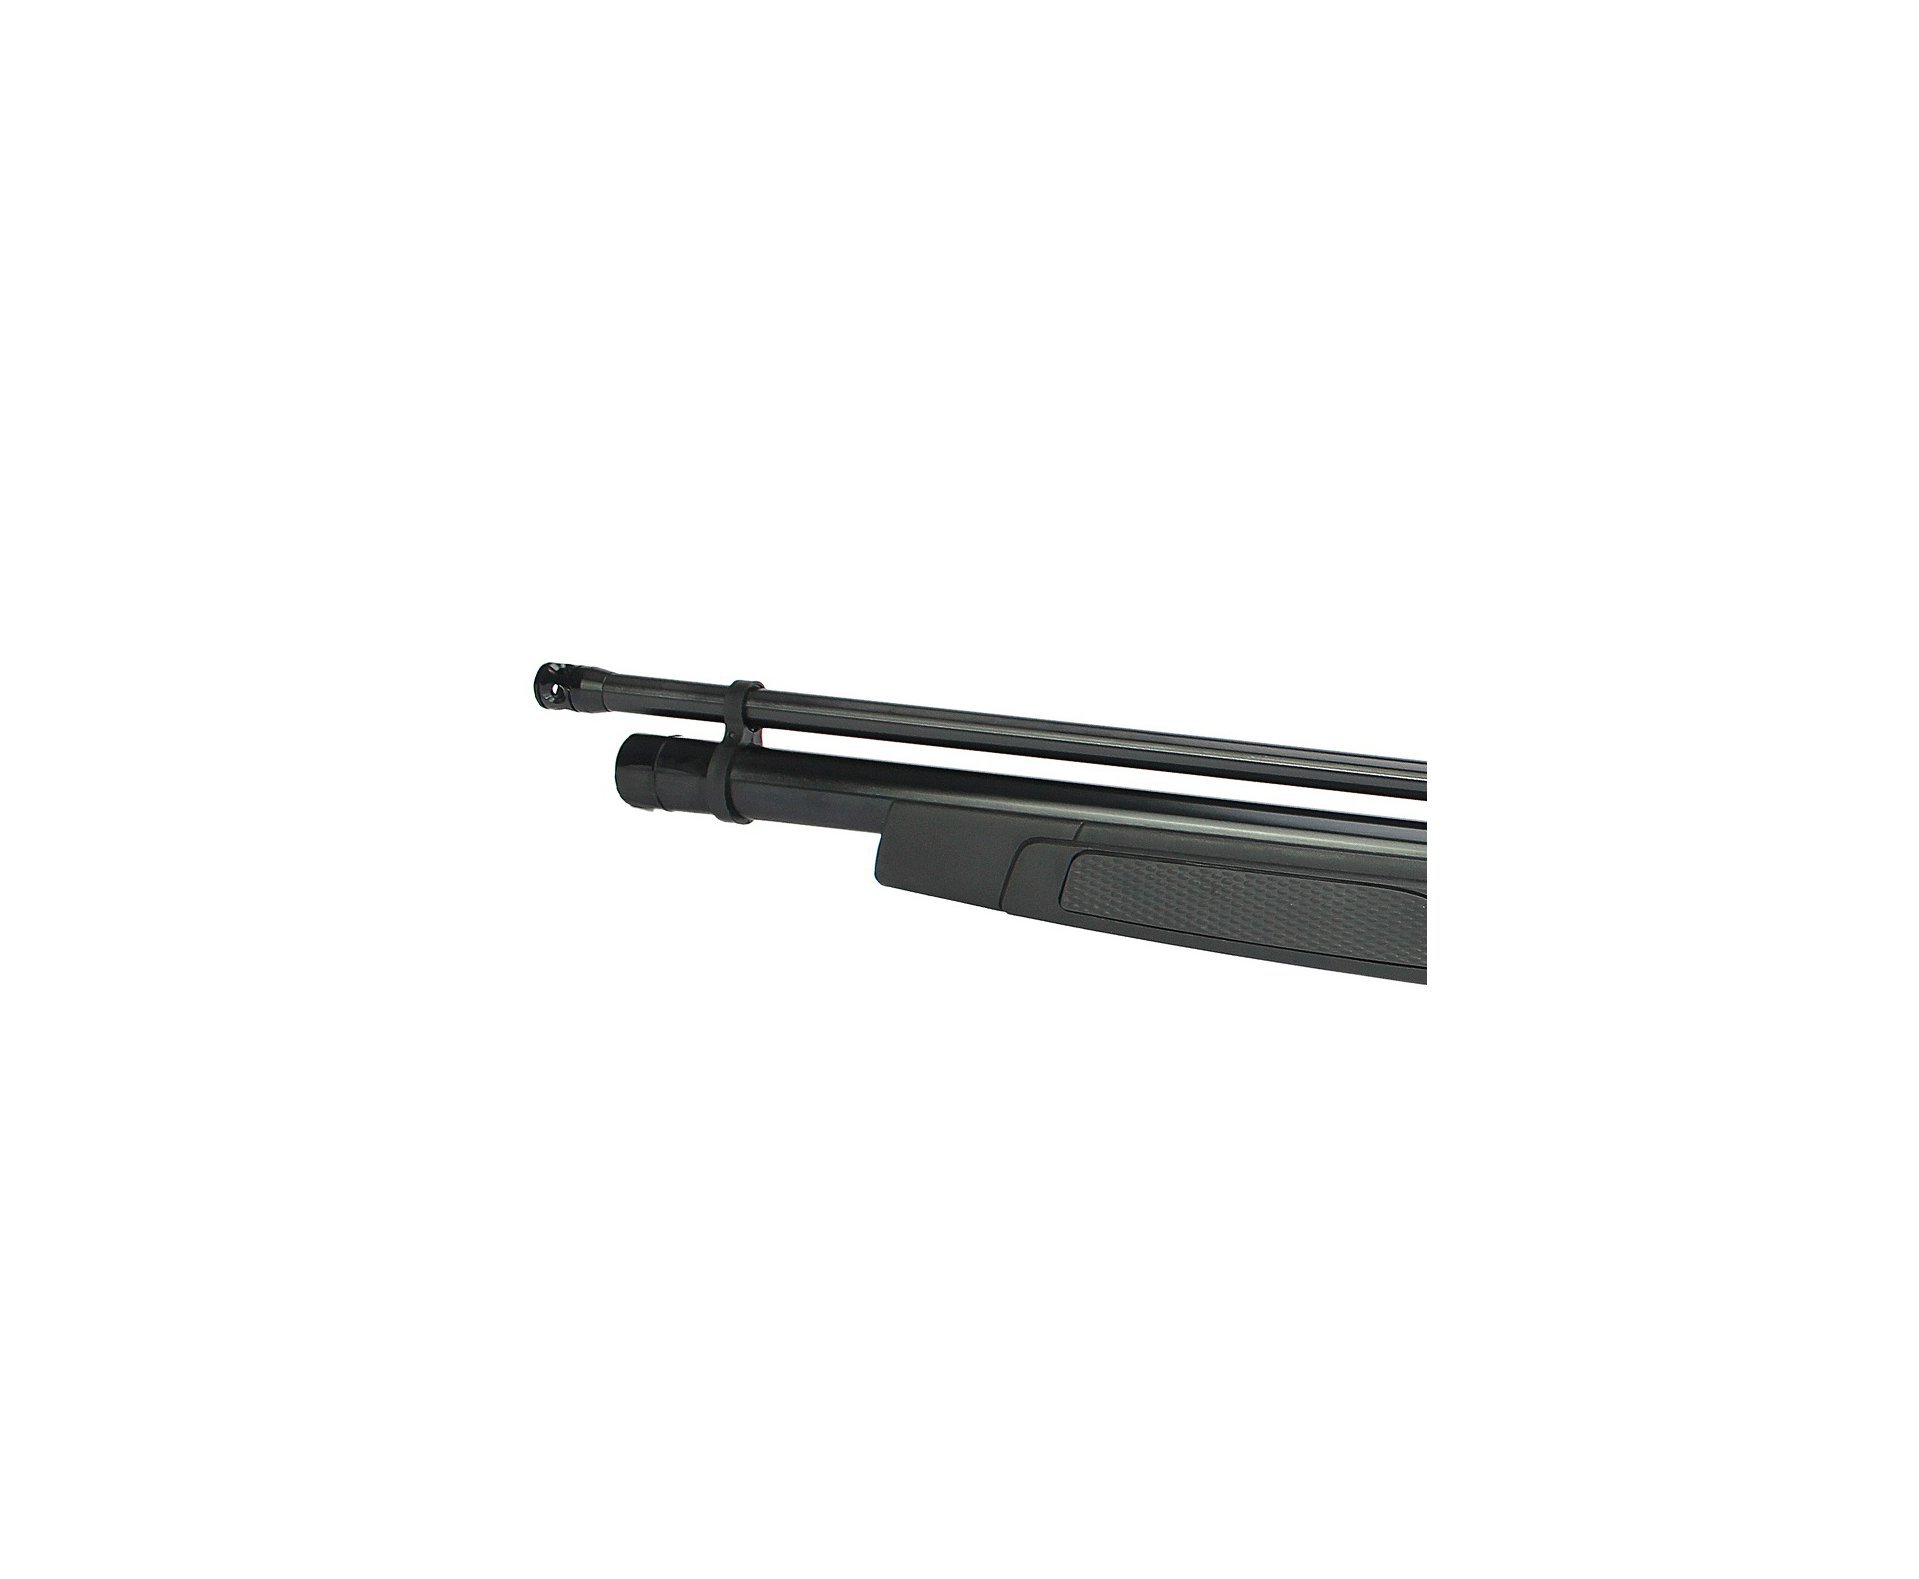 Carabina Pcp Gamo Coyote Black Cal 5,5mm - Gamo